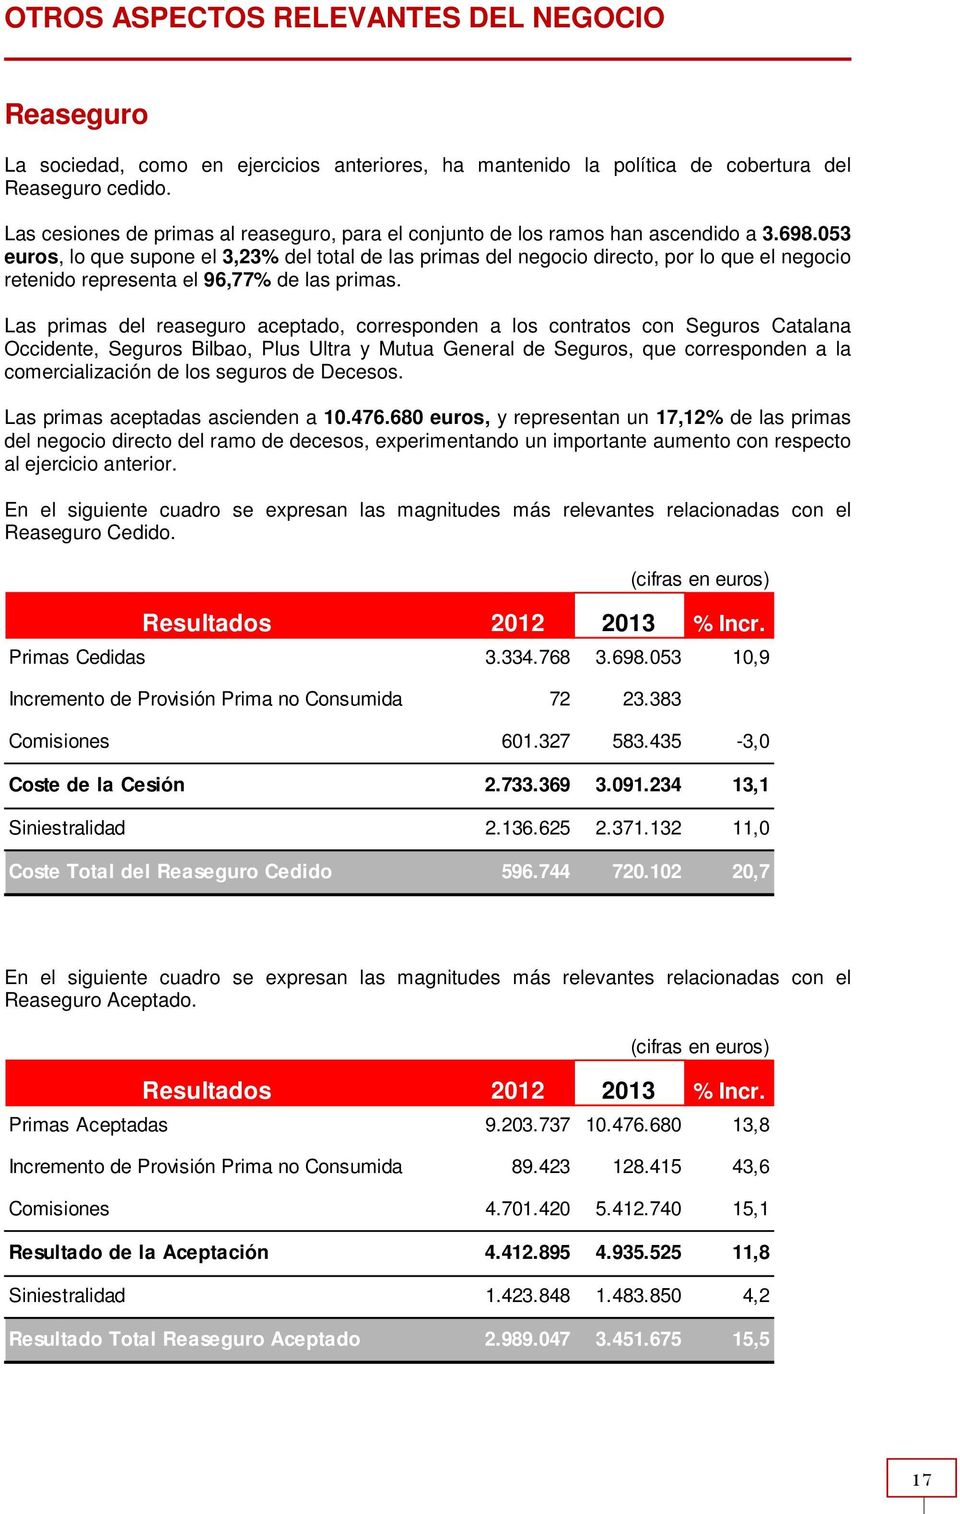 053 euros, lo que supone el 3,23% del total de las primas del negocio directo, por lo que el negocio retenido representa el 96,77% de las primas.